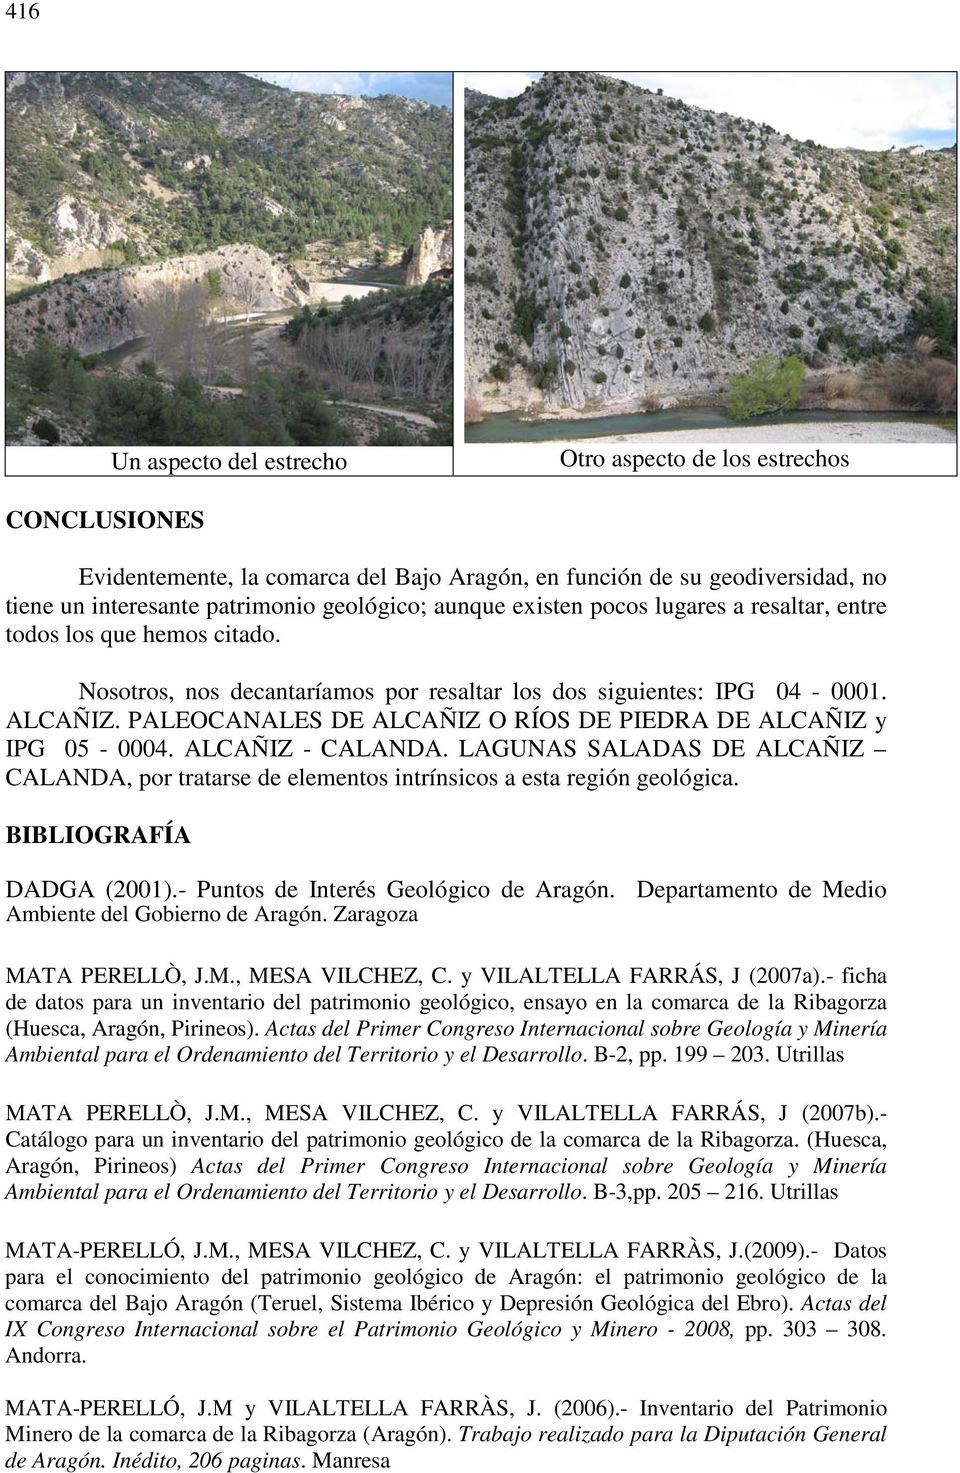 PALEOCANALES DE ALCAÑIZ O RÍOS DE PIEDRA DE ALCAÑIZ y IPG 05-0004. ALCAÑIZ - CALANDA. LAGUNAS SALADAS DE ALCAÑIZ CALANDA, por tratarse de elementos intrínsicos a esta región geológica.